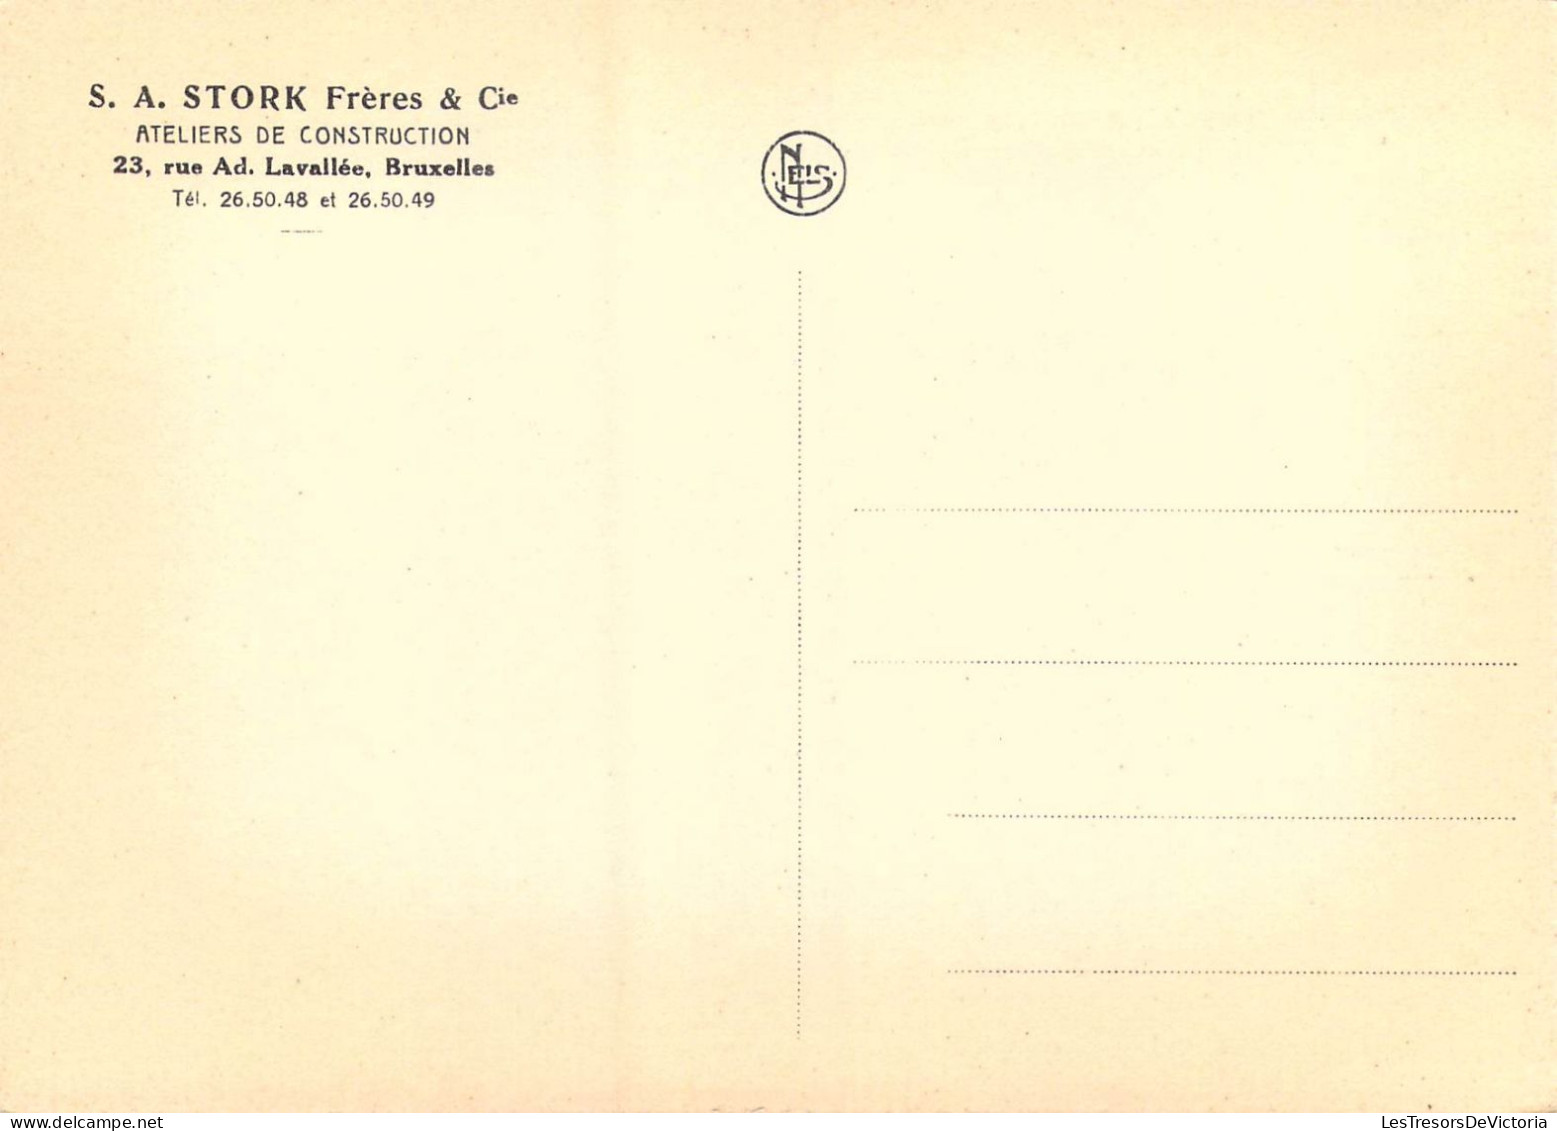 PUBLICITES - S.A. Stork Frères & Cie - Ateliers De Construction - 23 Rue Ad. Lavallée Bruxelles - Carte Postale Ancienne - Publicité